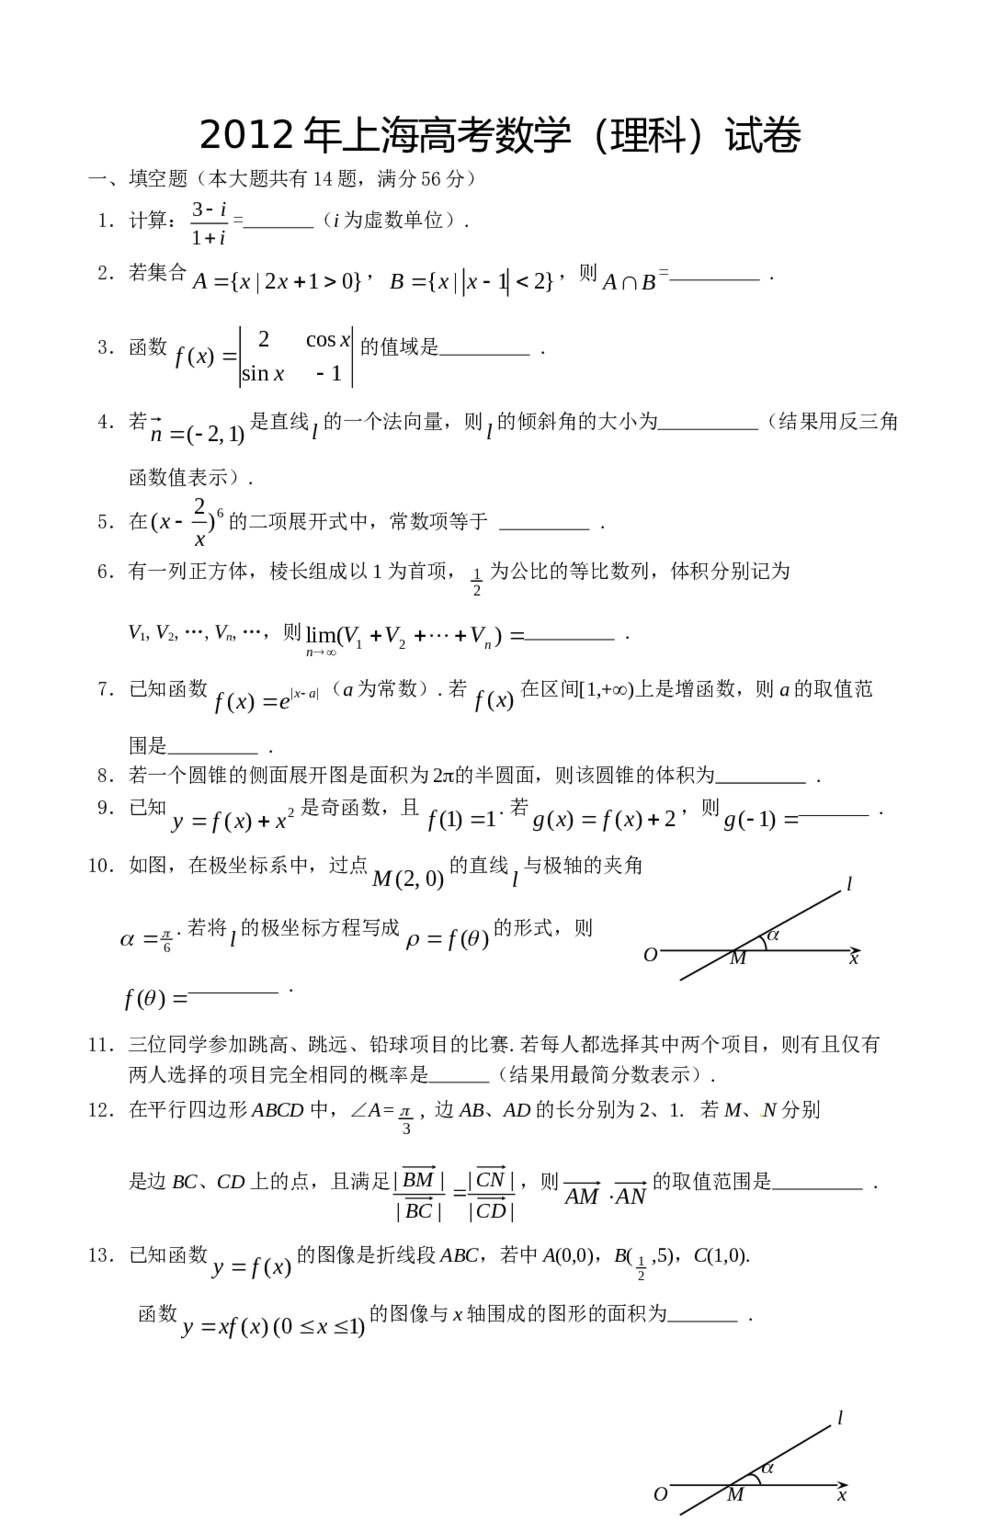 2012年上海高考数学(理科)试卷+解答1